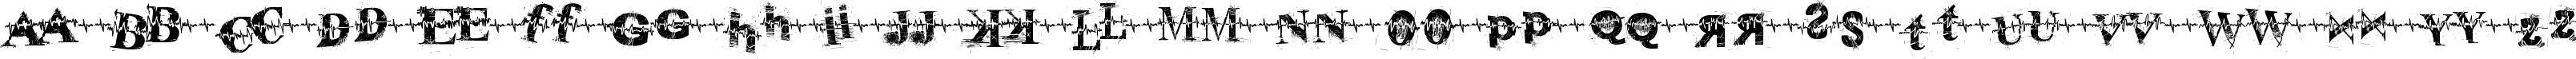 Пример написания английского алфавита шрифтом pulse sans